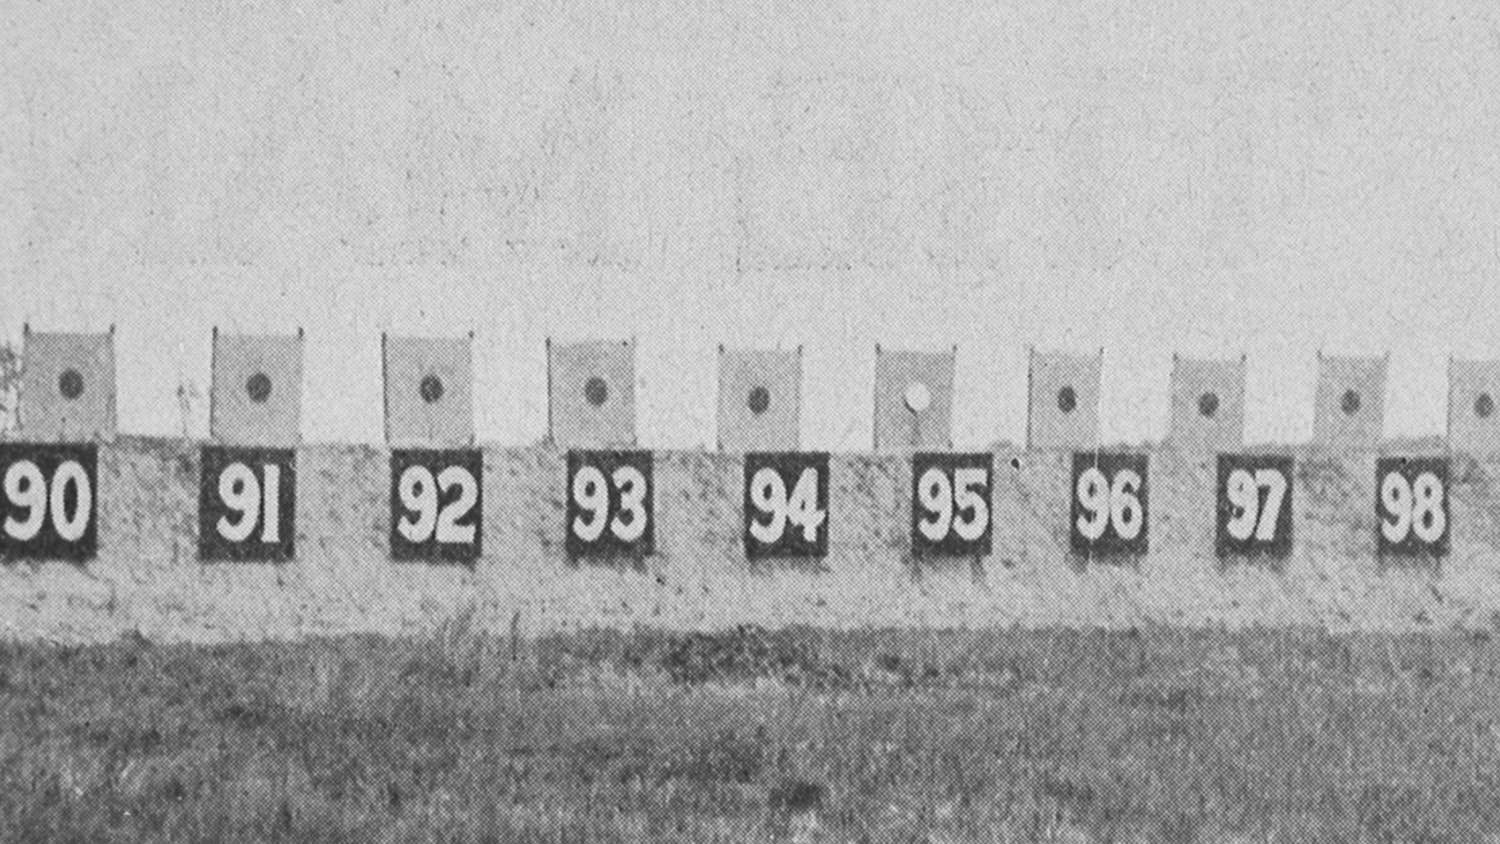 NRA Caldwell Range in 1919